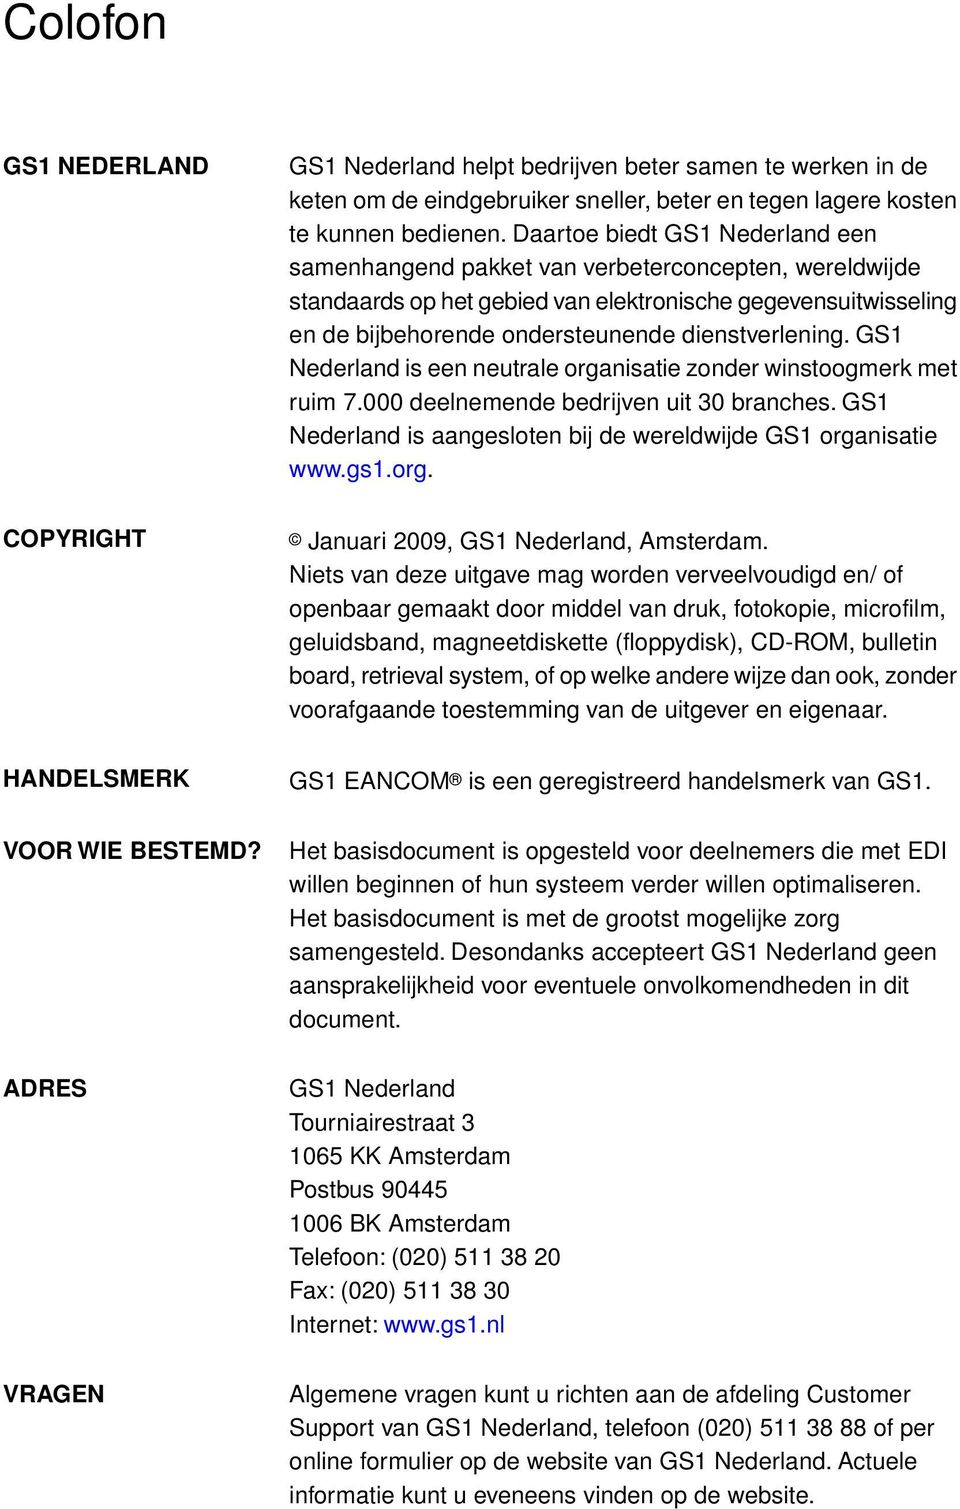 dienstverlening. GS1 Nederland is een neutrale organisatie zonder winstoogmerk met ruim 7.000 deelnemende bedrijven uit 30 branches.